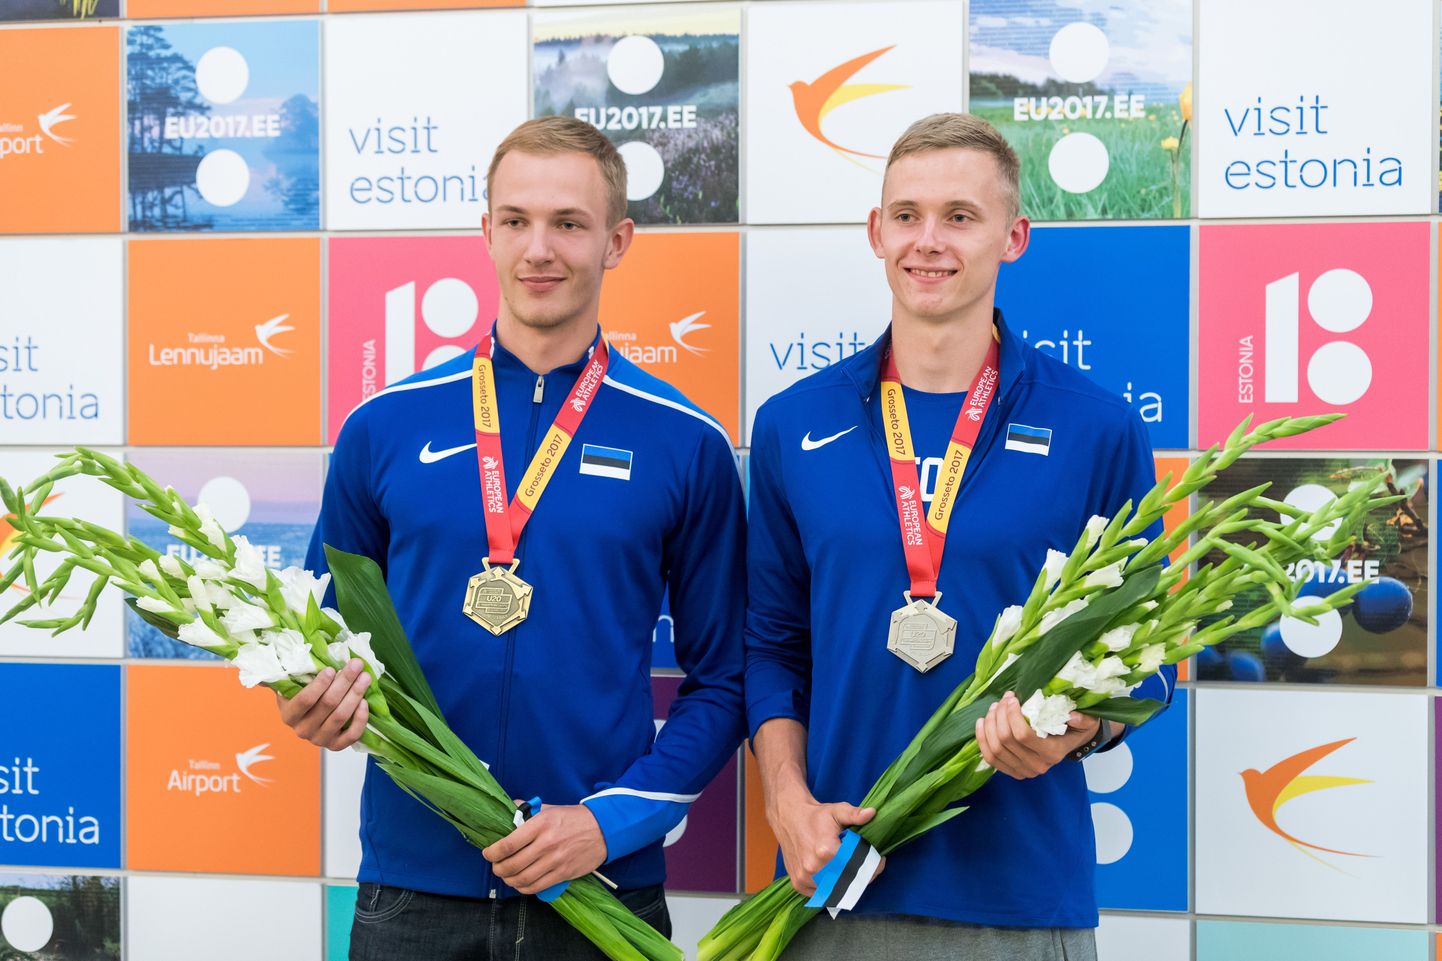 Suvised U20 EMi medalistid Karel Tilga (vasakul) ja Johannes Erm võivad järgmisest aastast saada meeskonnakaaslasteks ka ülikooli tasandil.